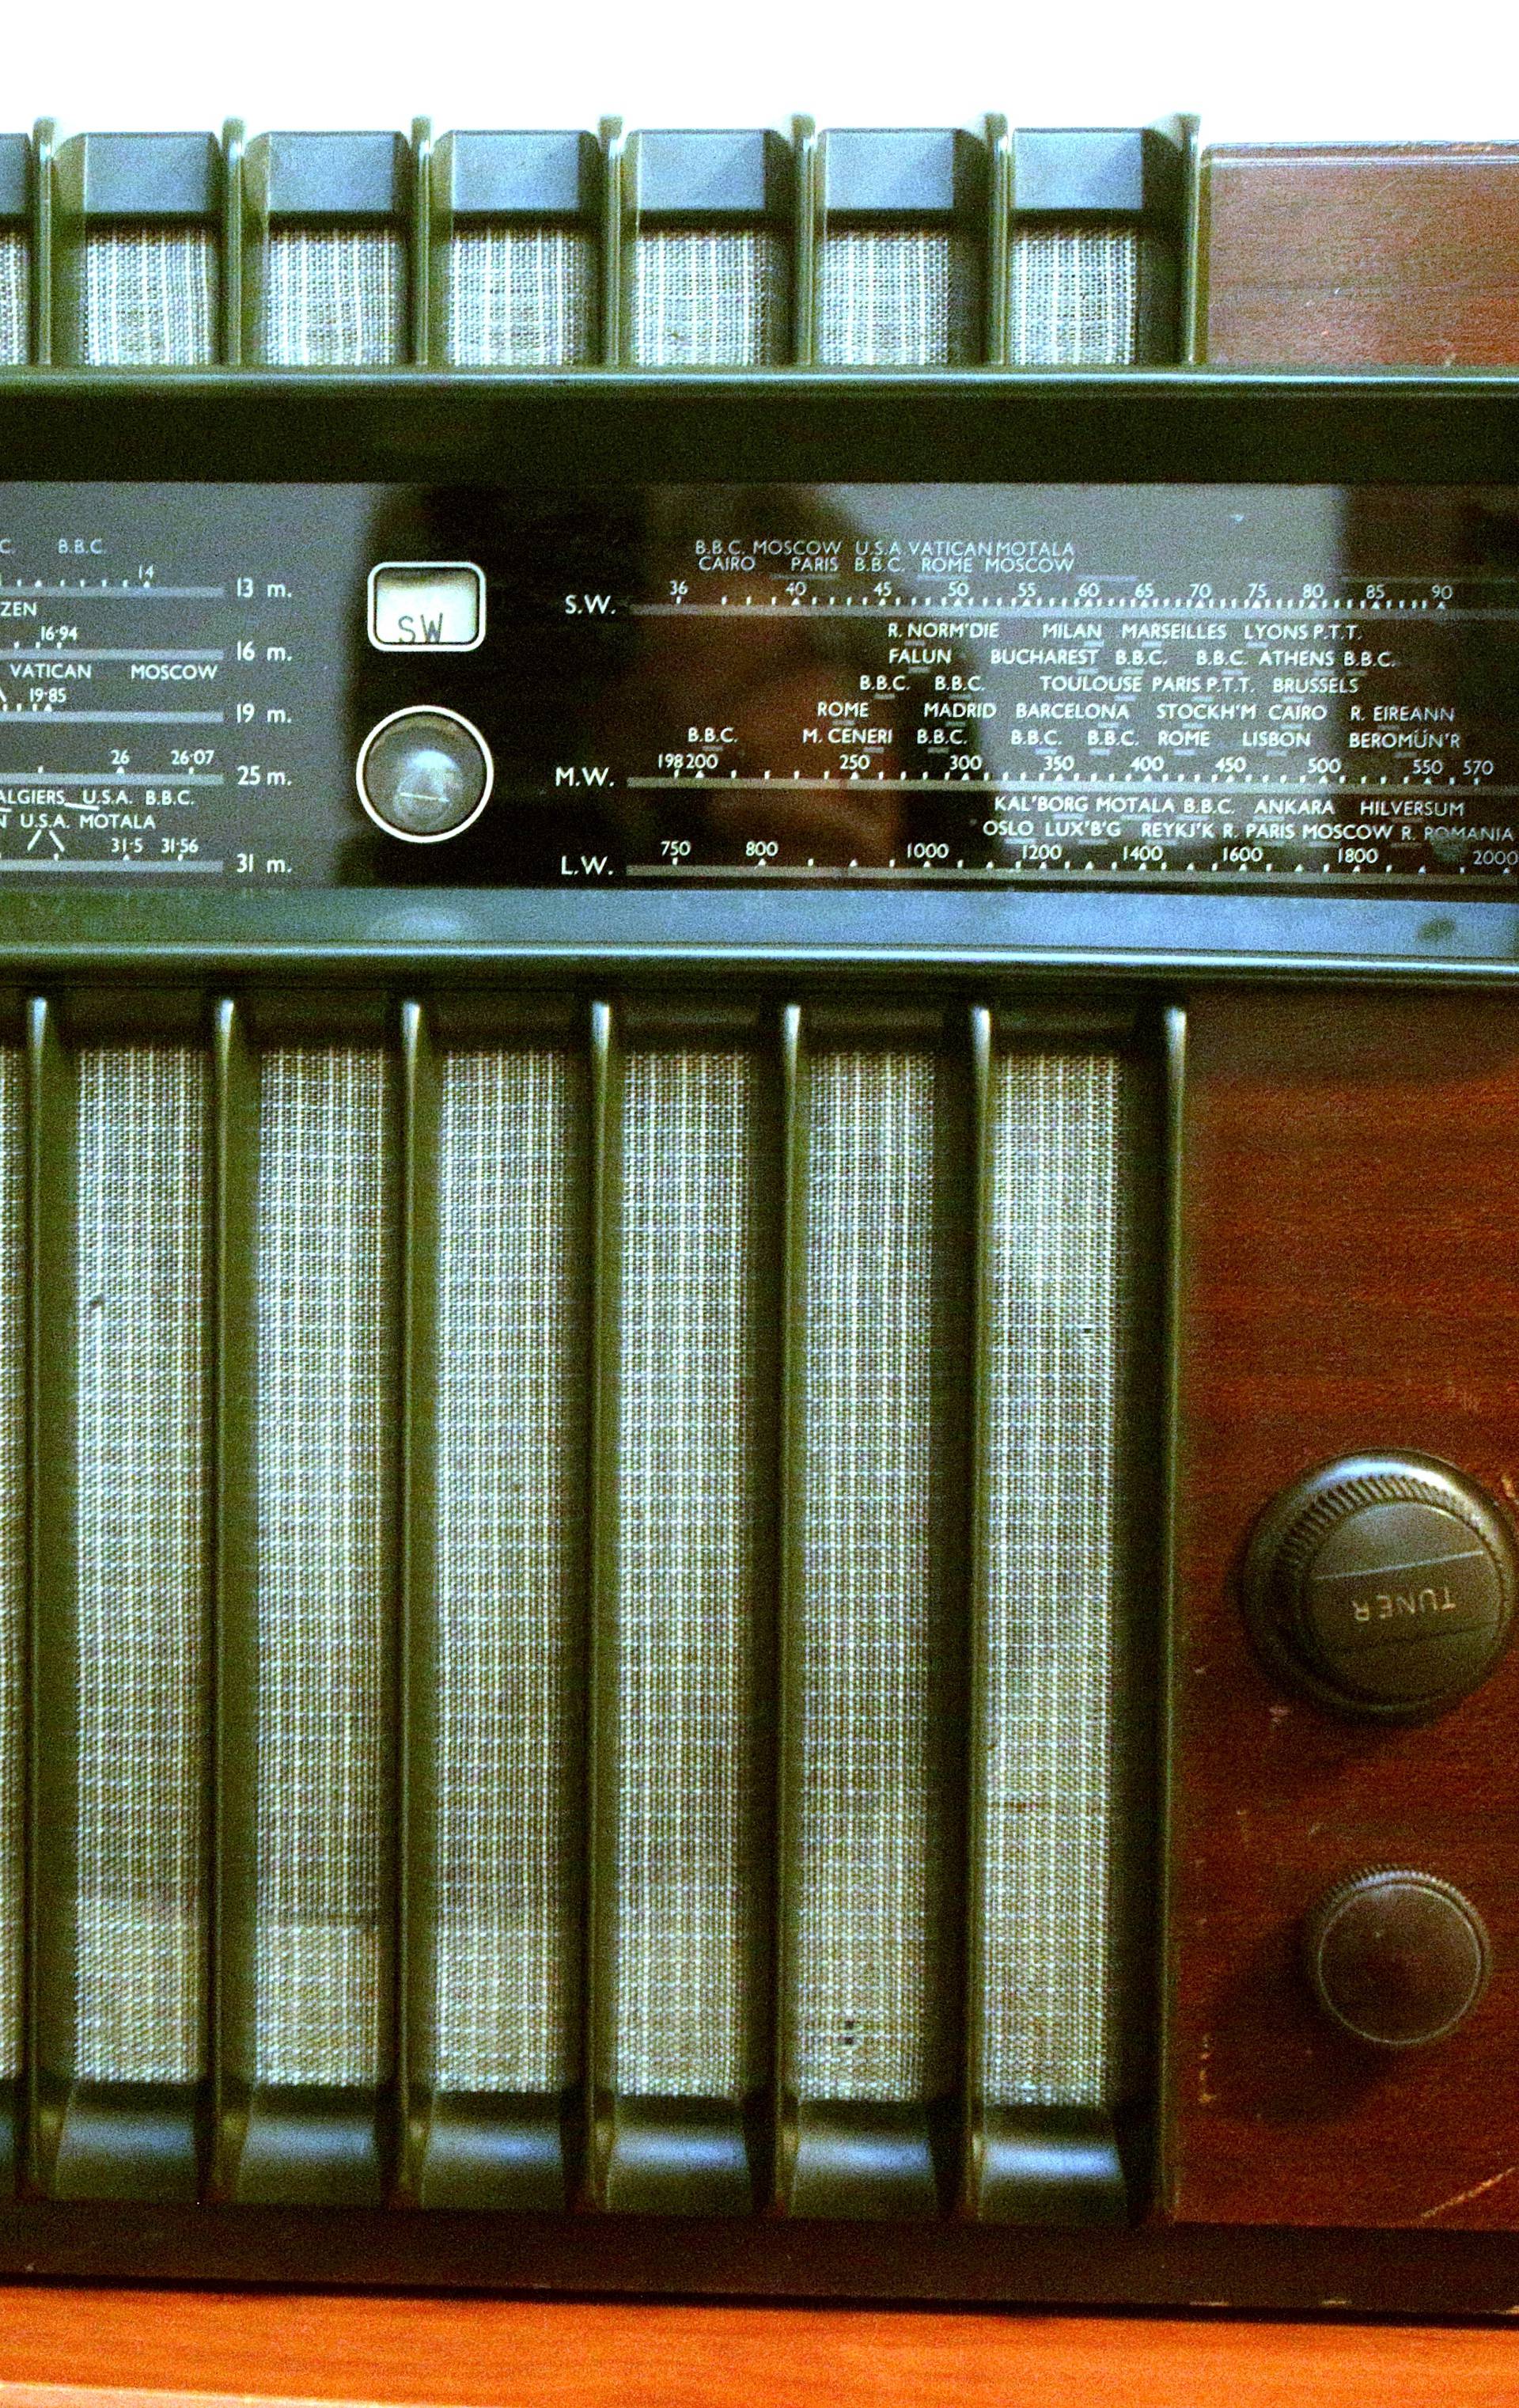 Didi  iz Dubrave  je kralj radija: 'U kolekciji je i špijunski radio'